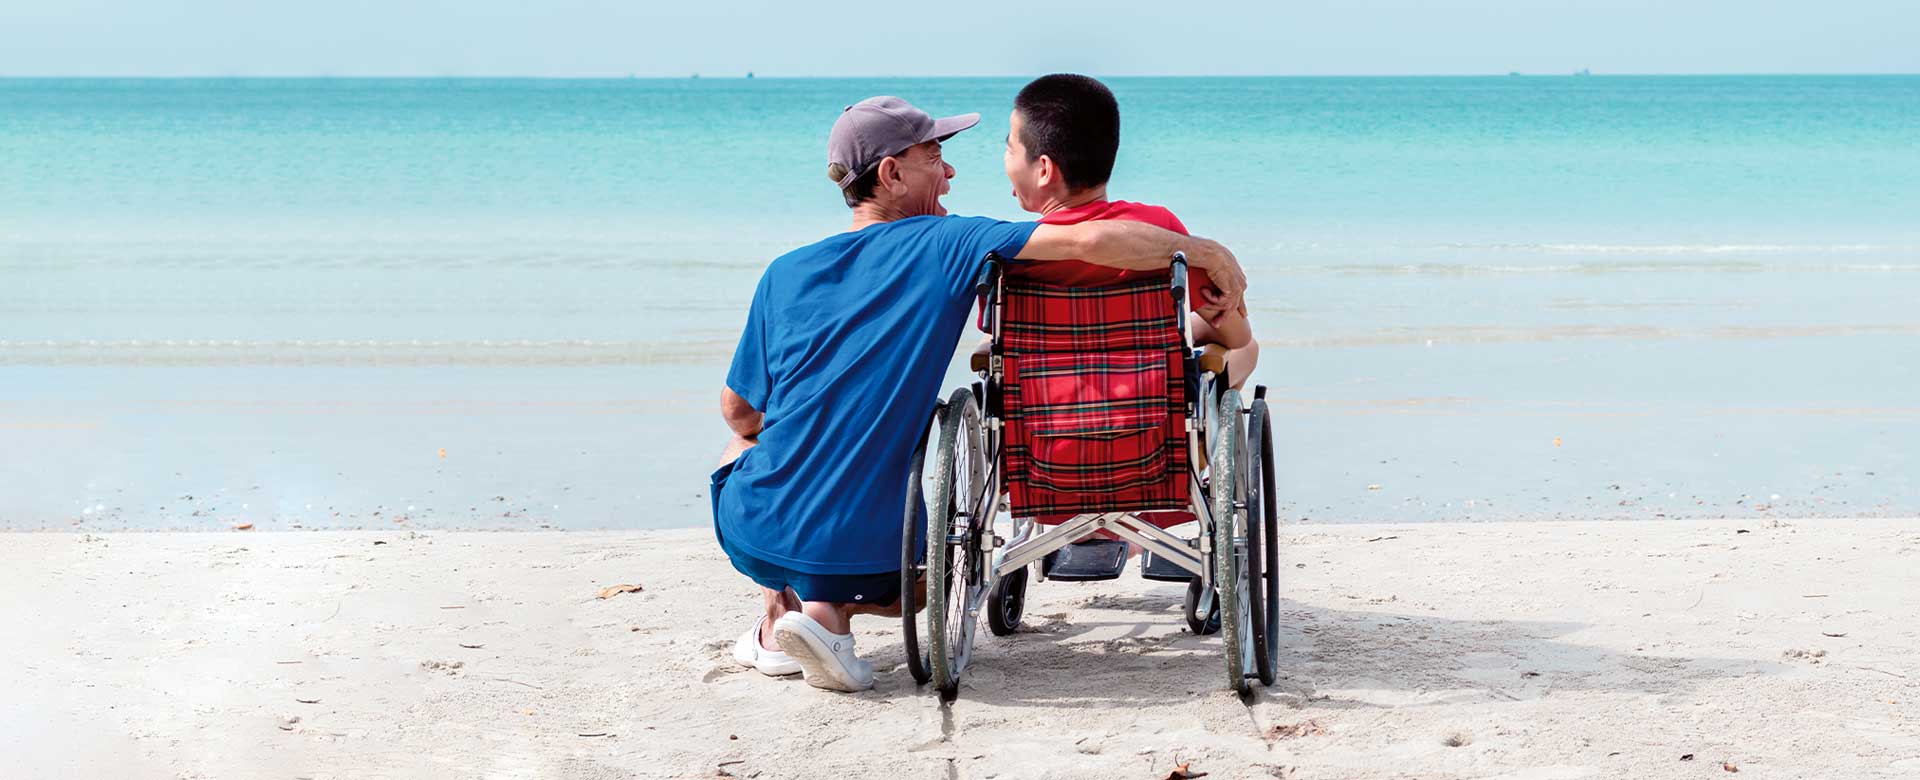 Un uomo in spiaggia abbraccia un ragazzo su sedia a rotelle di fronte al mare 